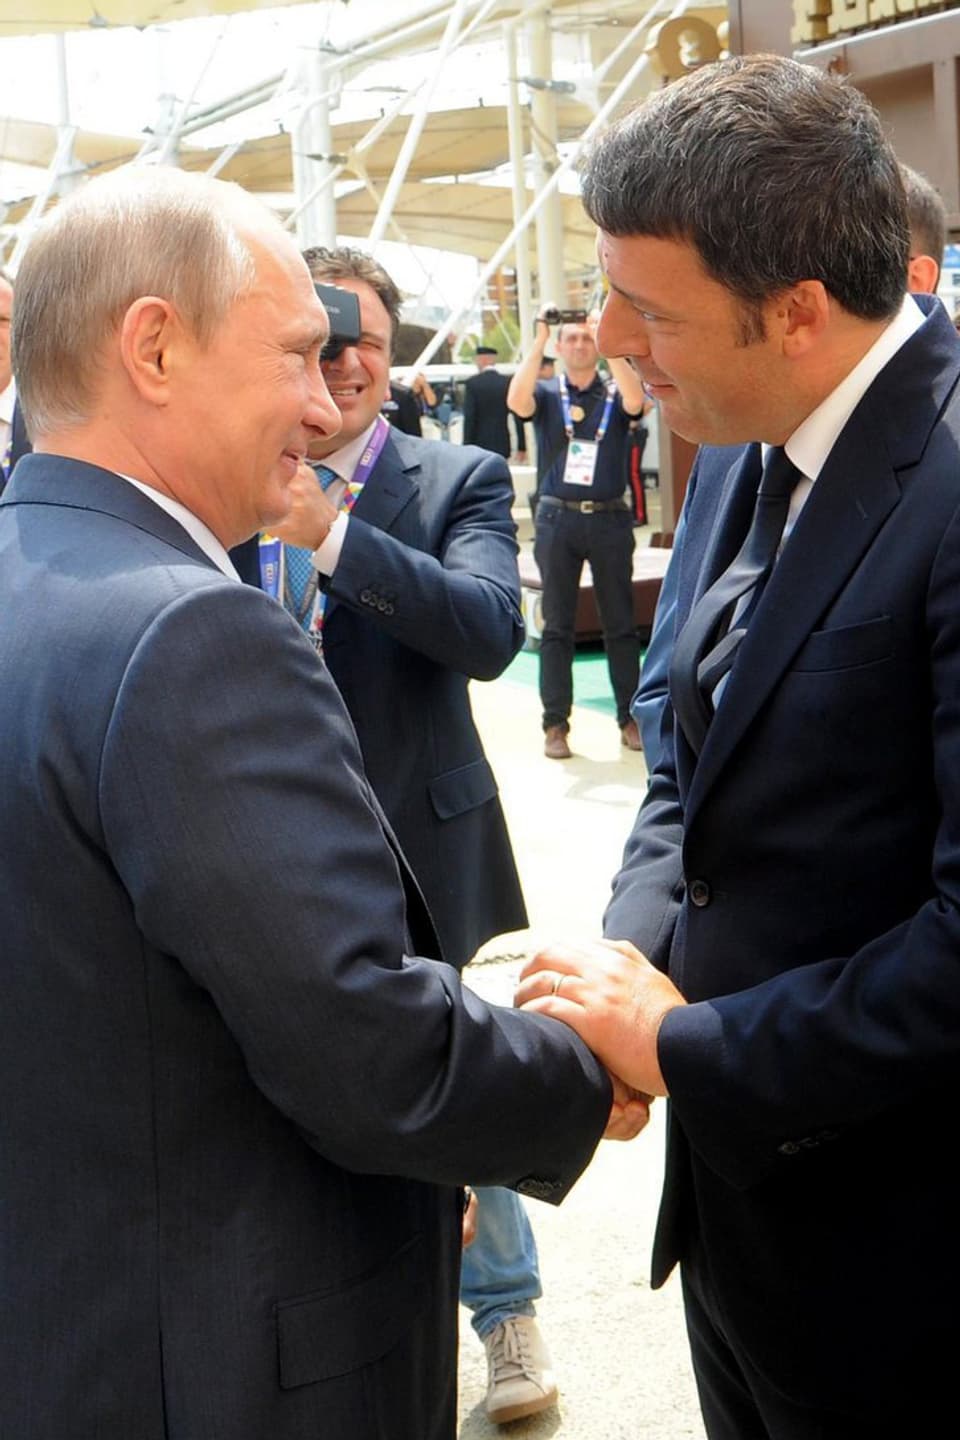 Putin und Renzi beim Händedruck.